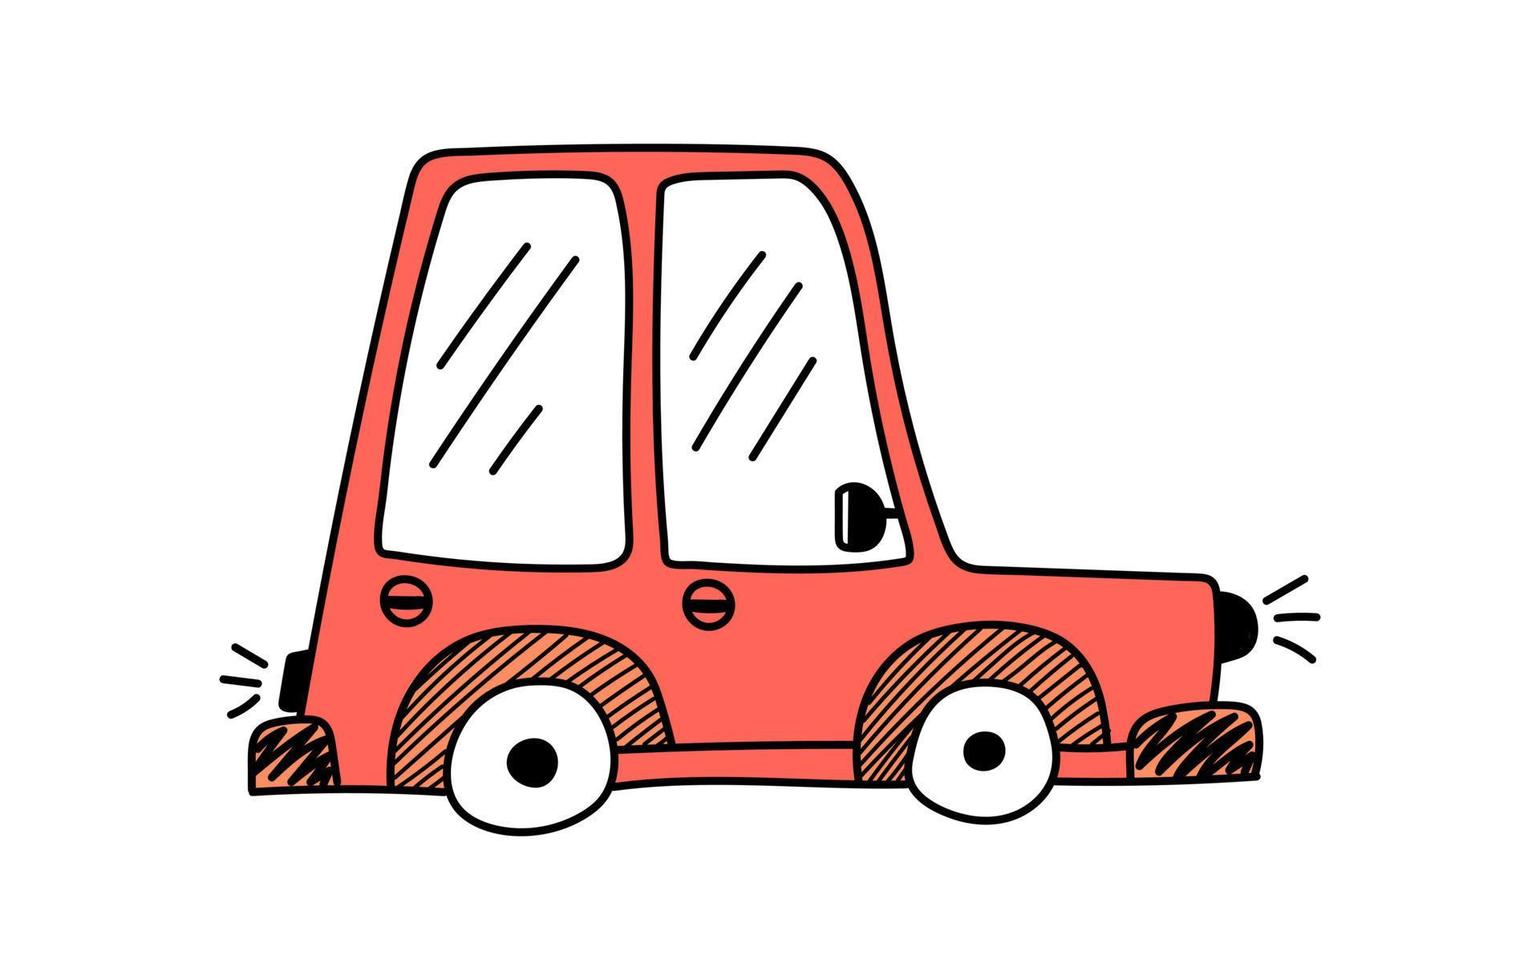 coche rojo lindo vector en estilo de fideos sobre un fondo blanco, ilustración infantil para postales, carteles, juguetes.